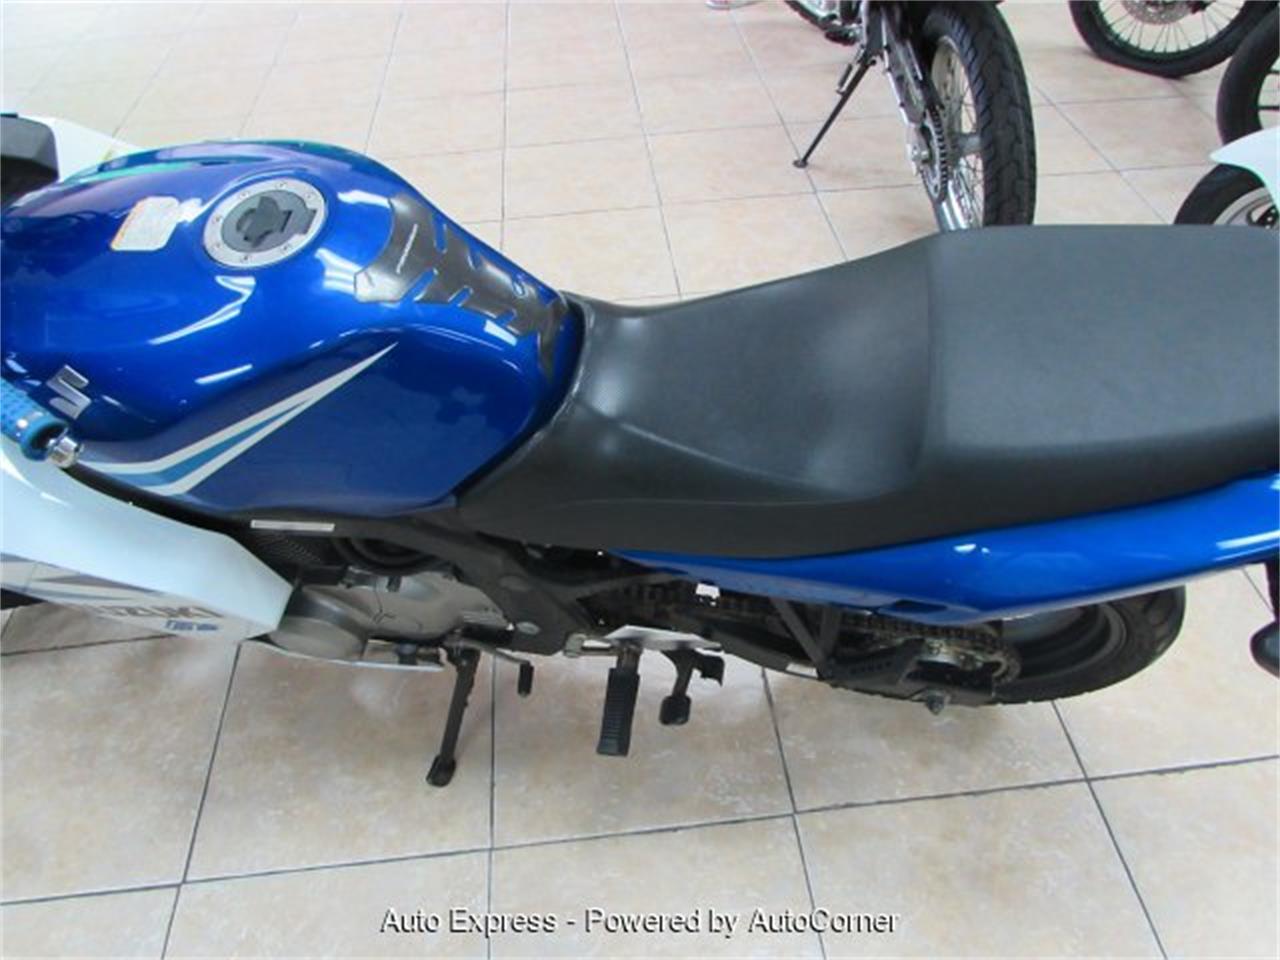 2005 Suzuki Motorcycle for sale in Orlando, FL – photo 4